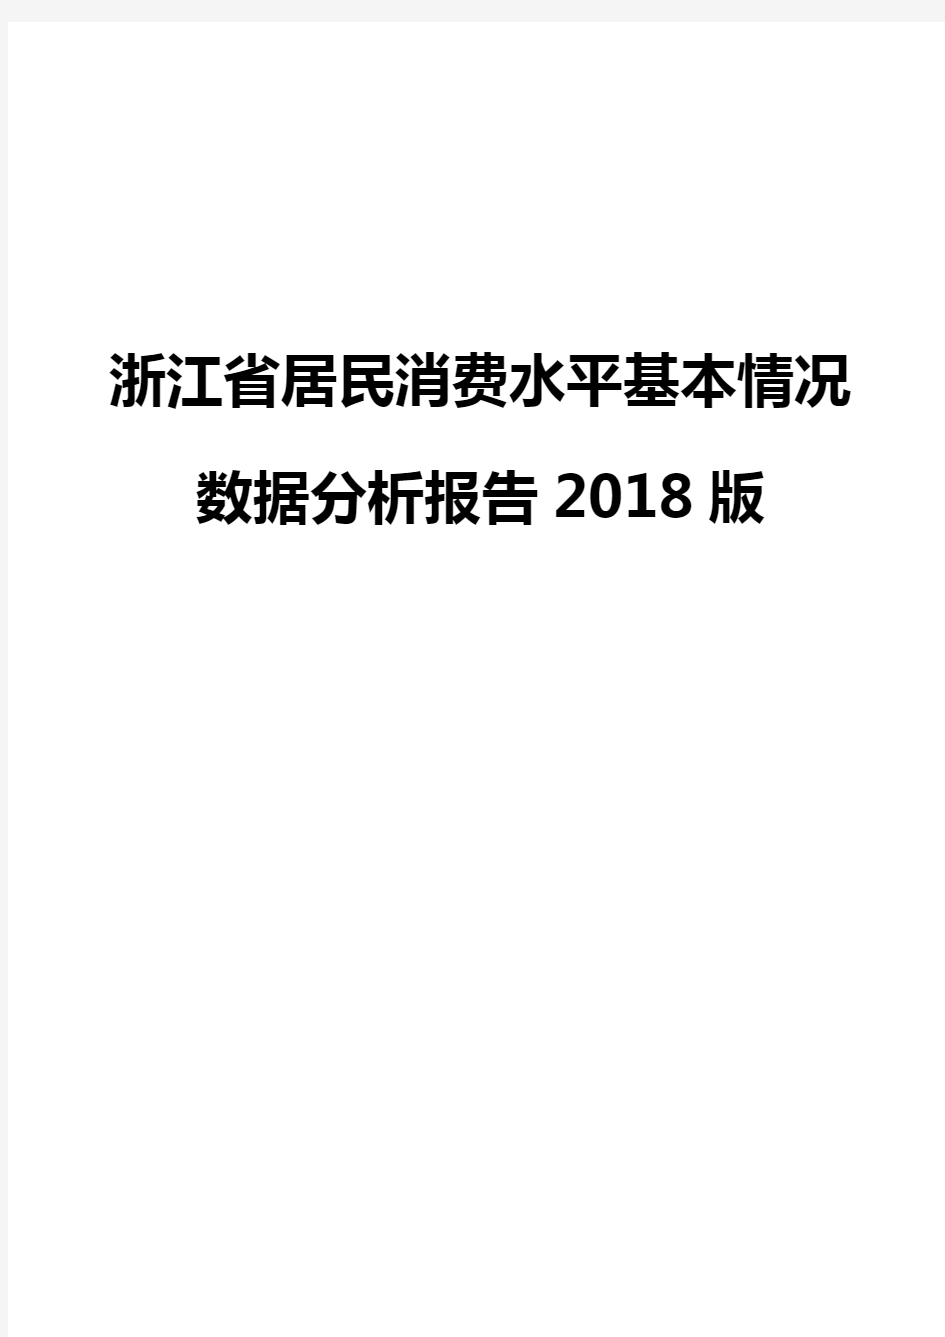 浙江省居民消费水平基本情况数据分析报告2018版